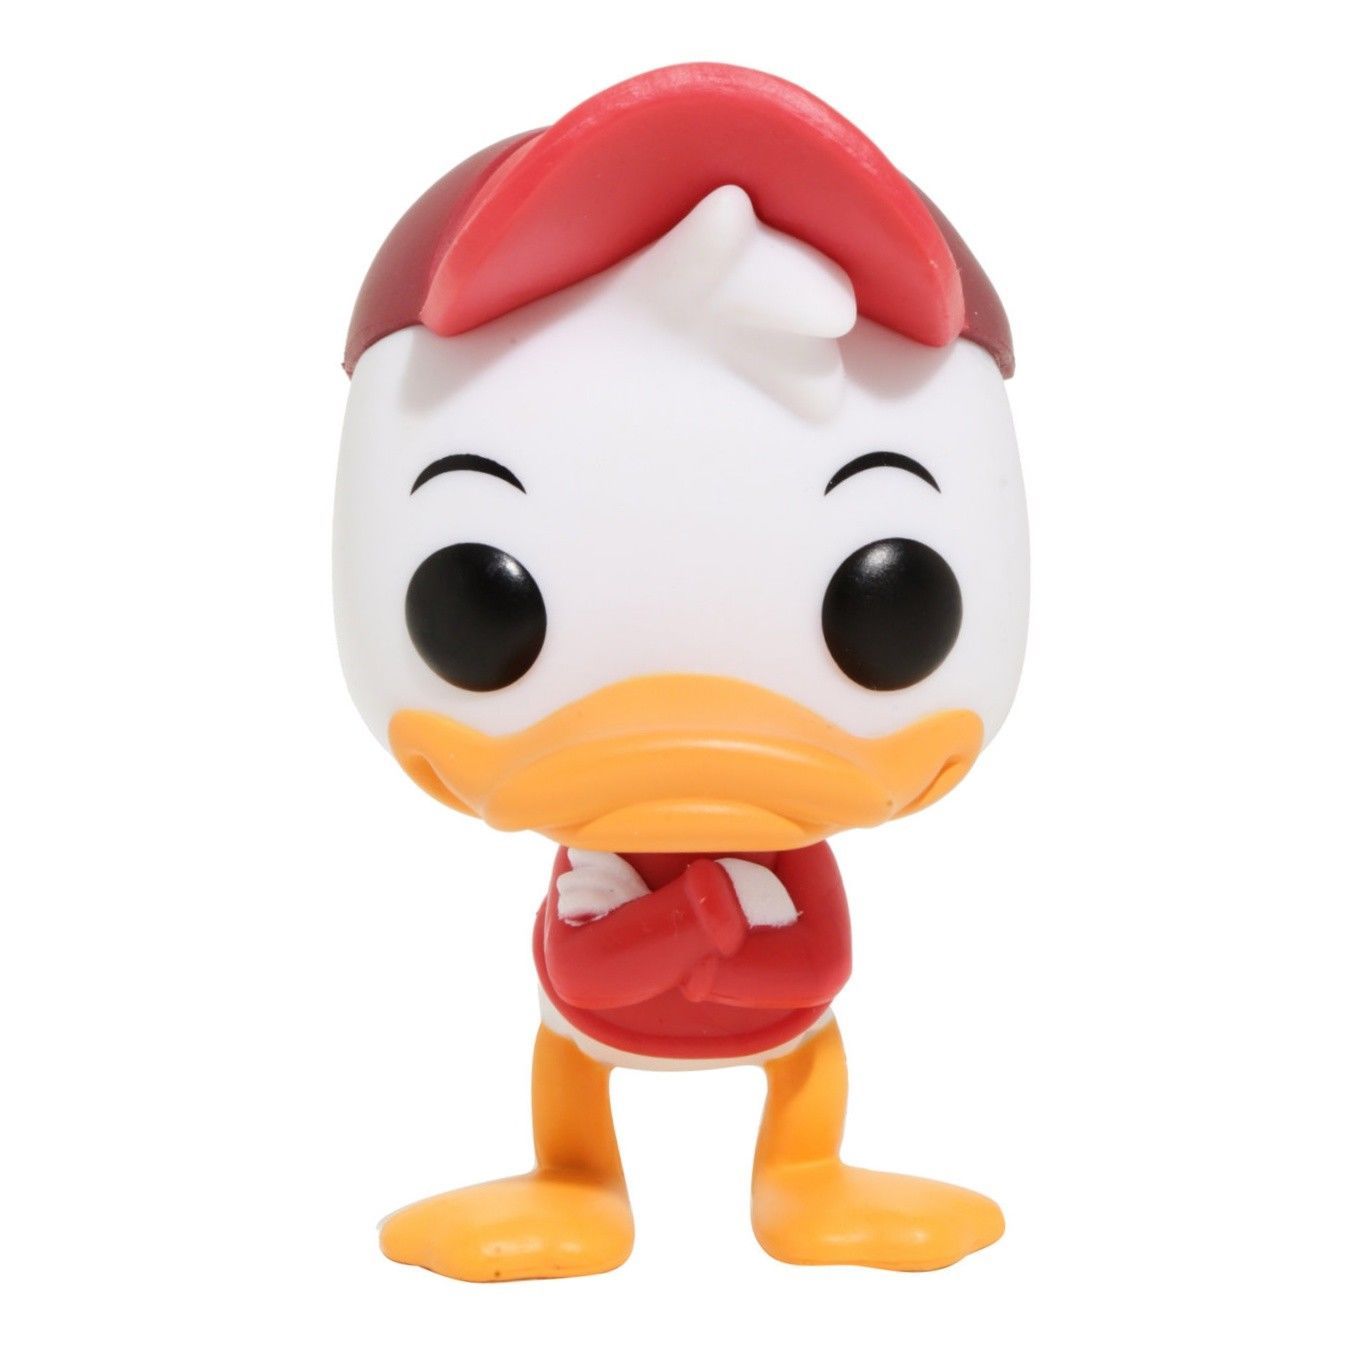 DuckTales (Os Caçadores de Aventuras) - Funko Pop! Disney